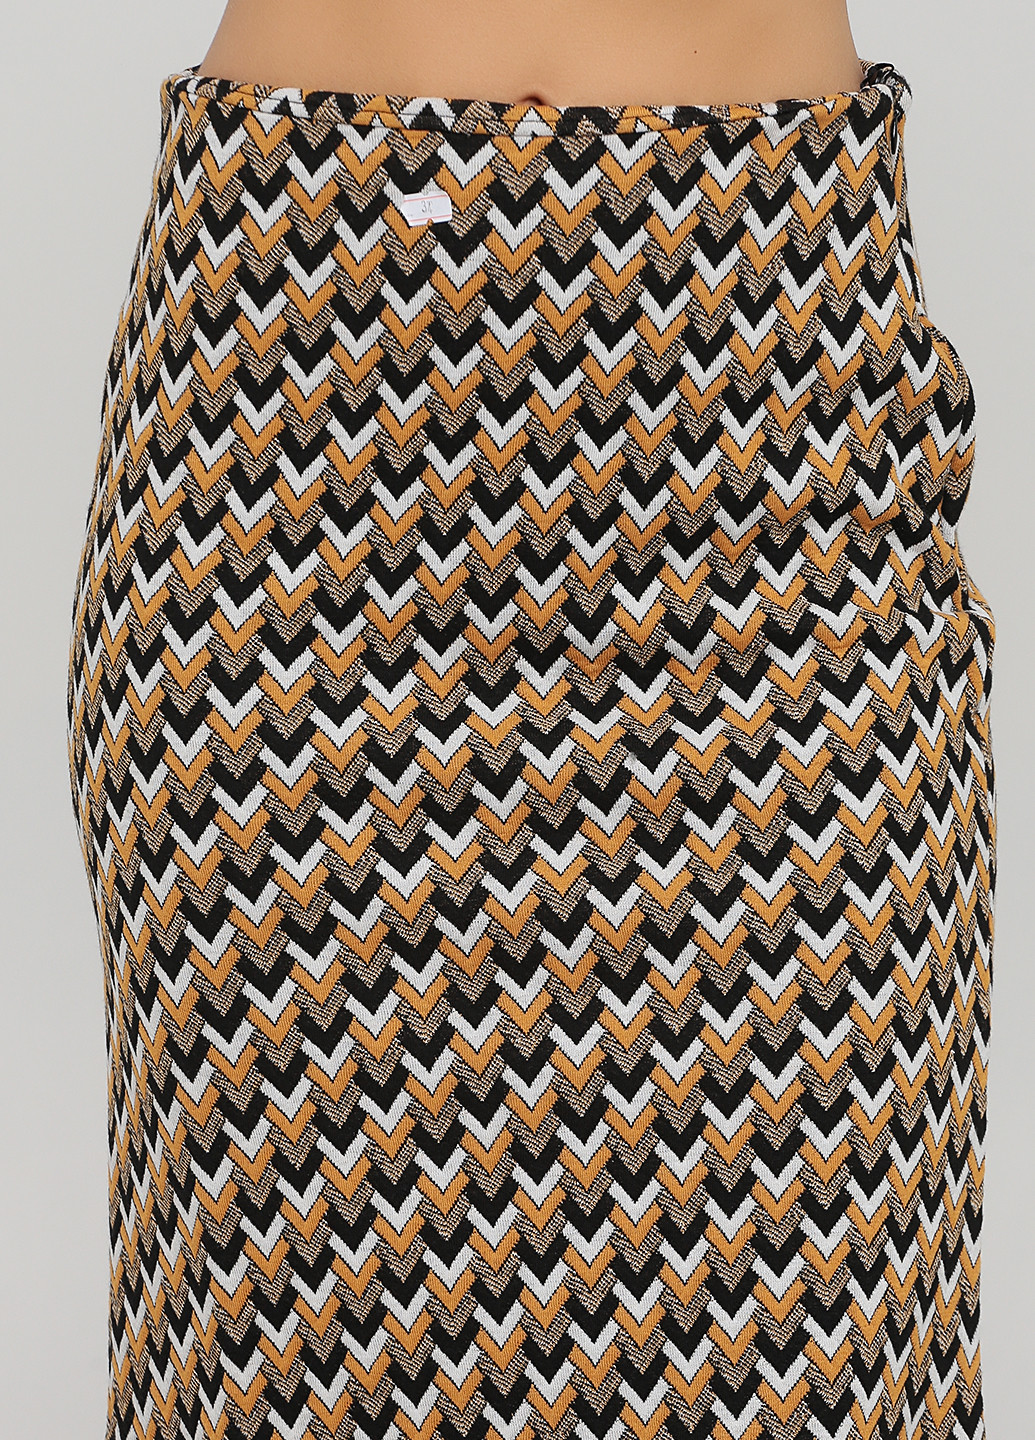 Костюм (джемпер, юбка) Madeleine юбочный геометрический коричневый кэжуал трикотаж, вискоза